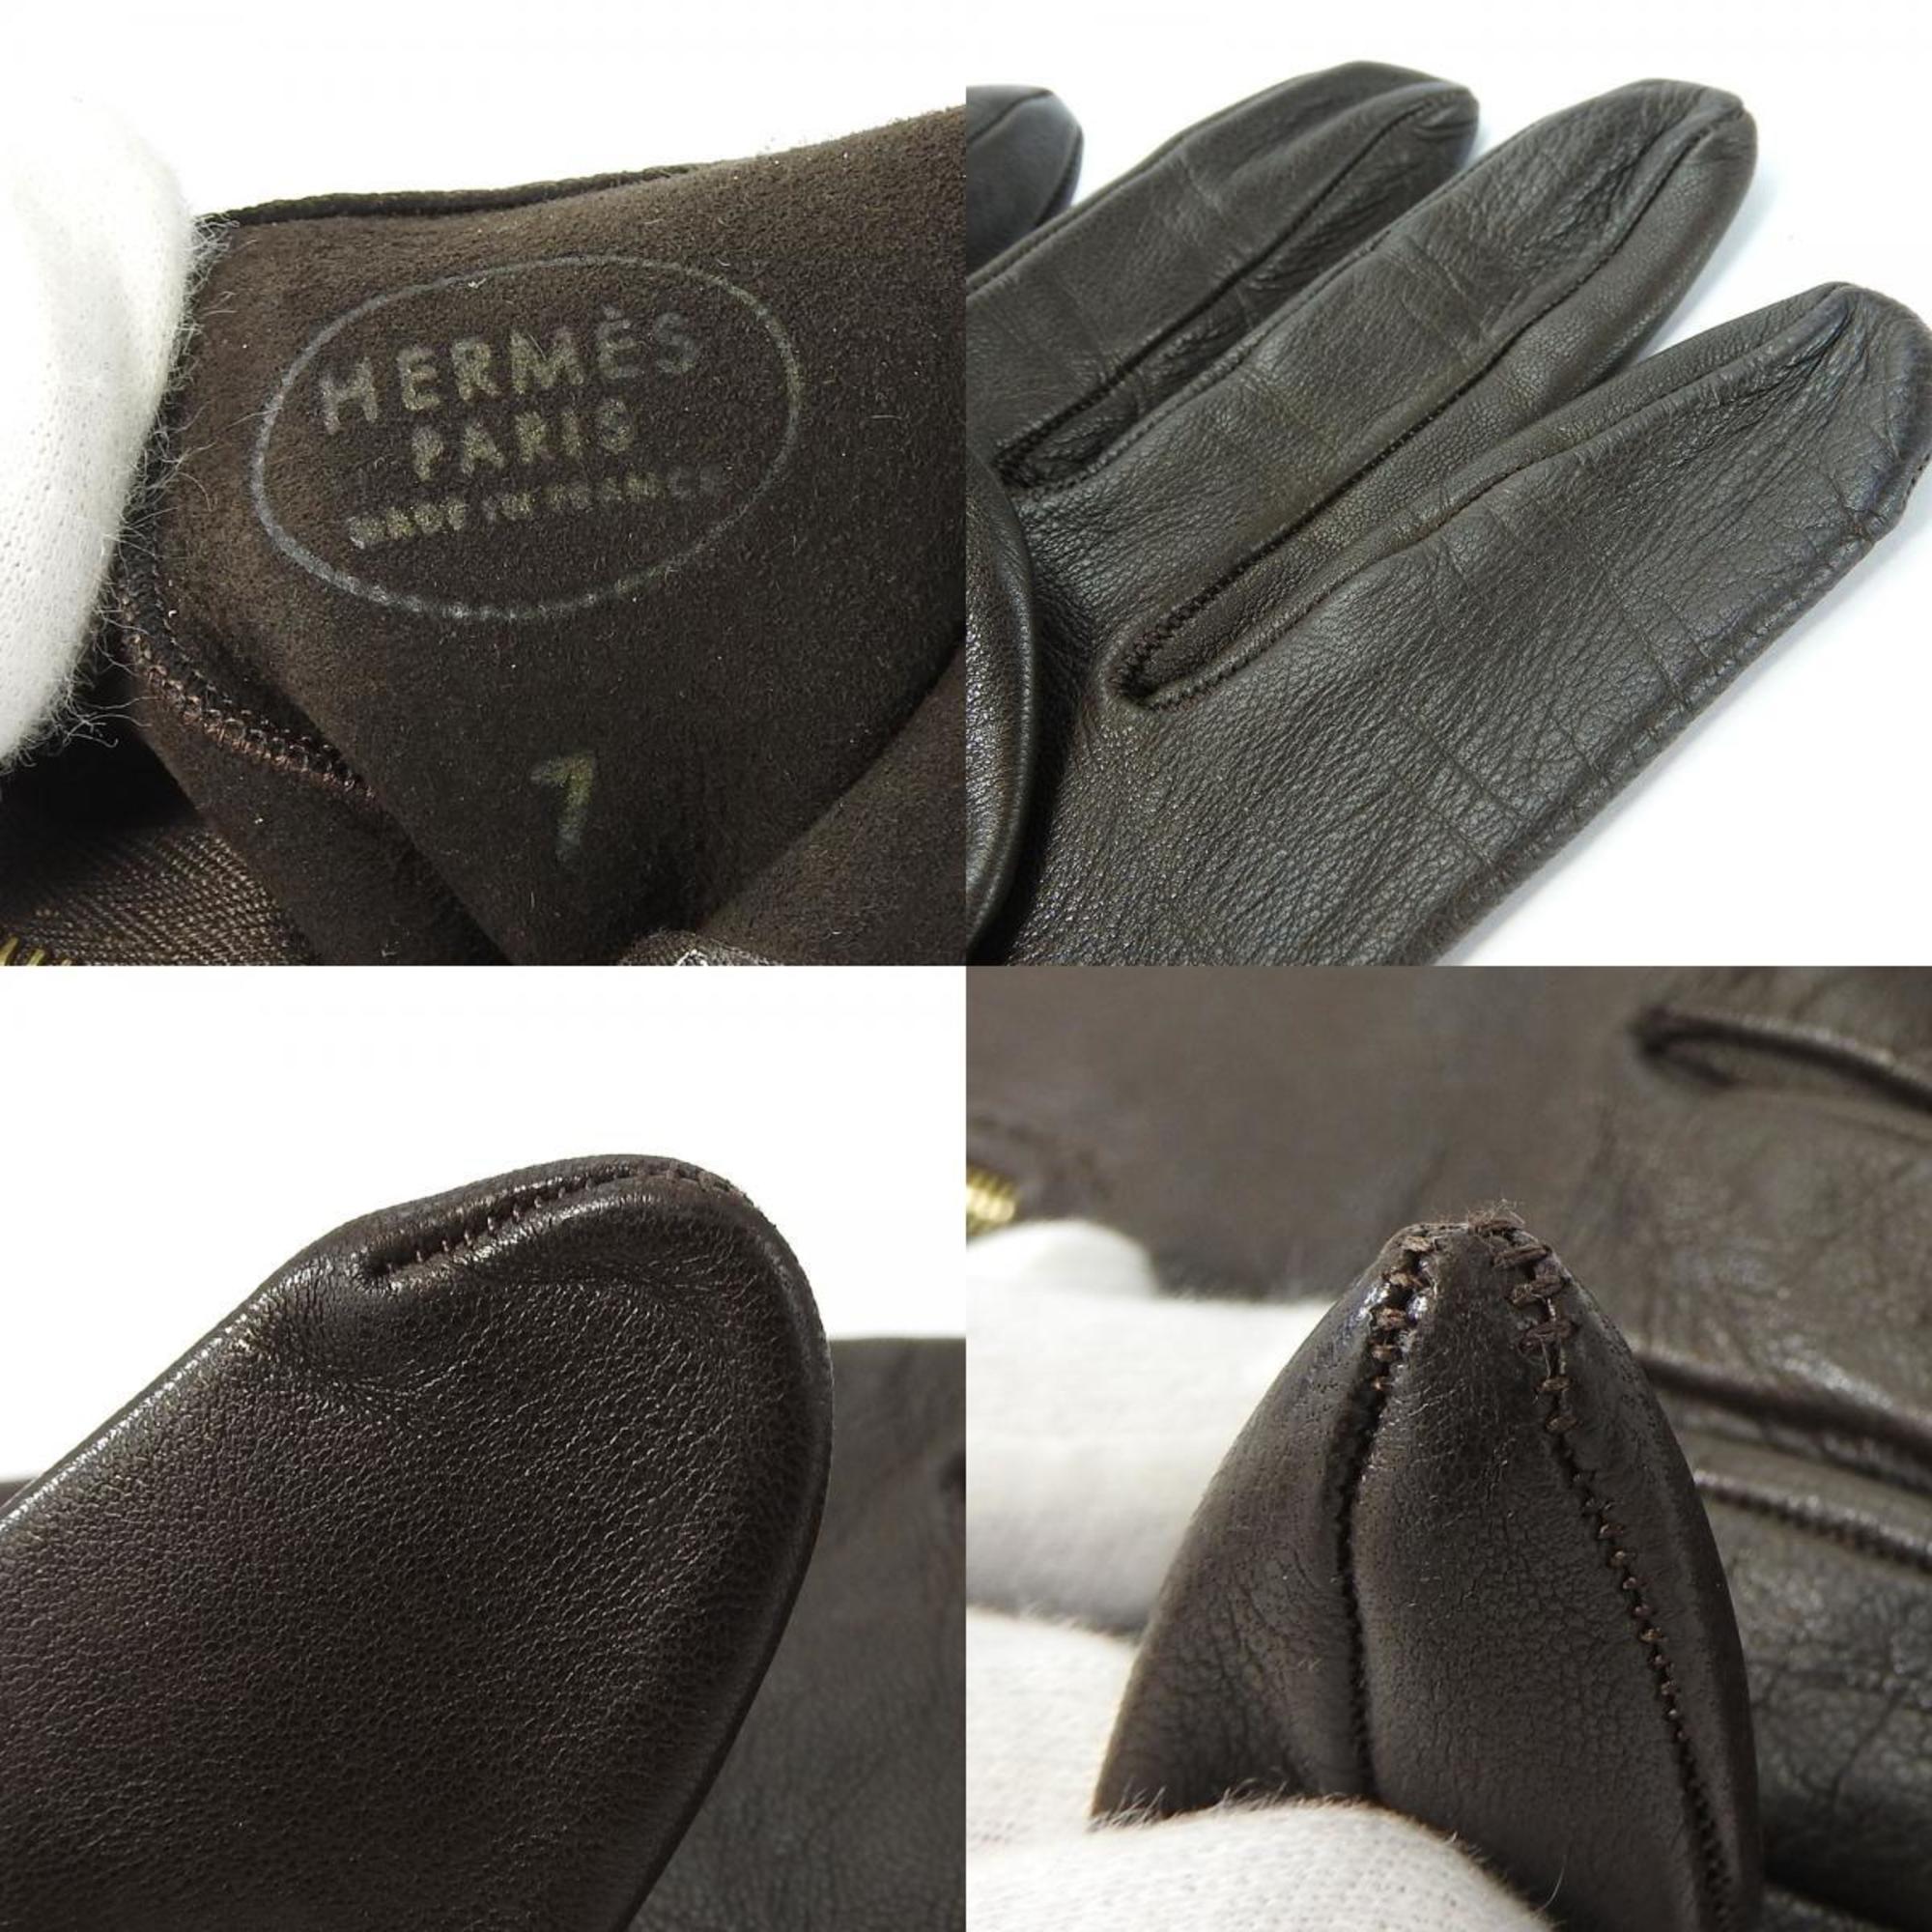 Hermes Gloves 7 Lamb Leather Dark Brown Kelly Cadena Women's HERMES